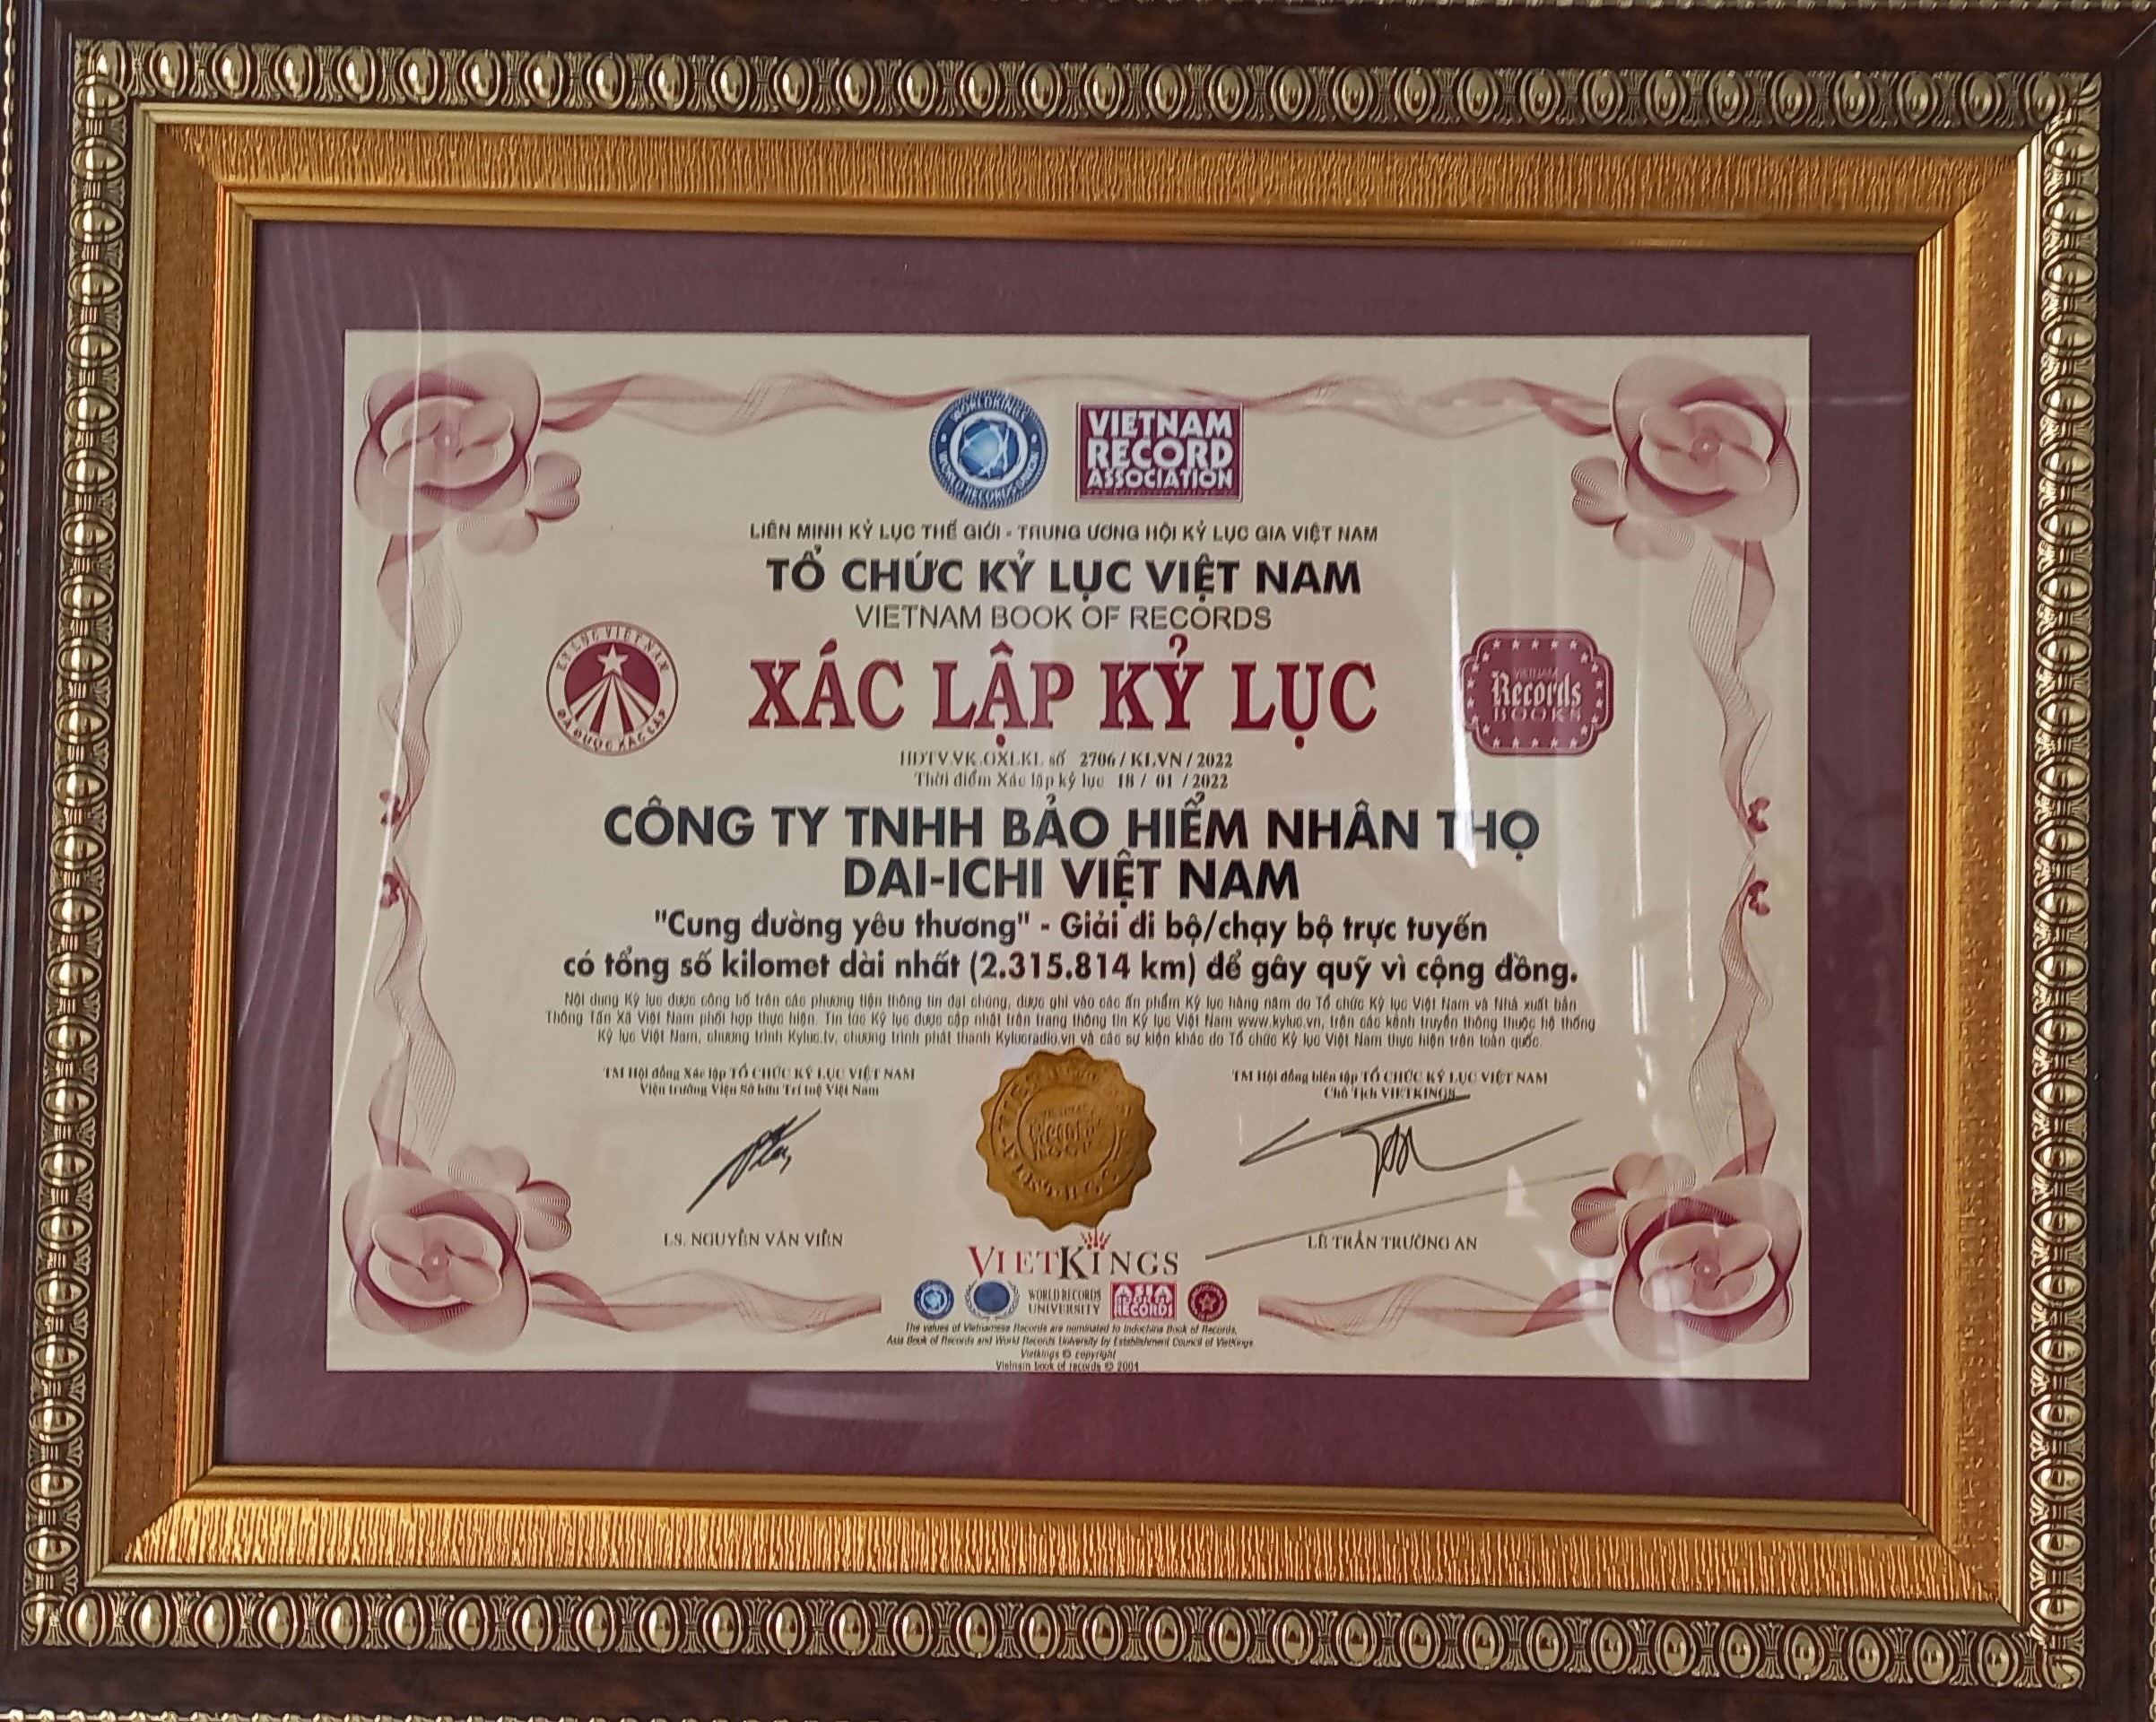 Giải Đi/Chạy bộ trực tuyến vì cộng đồng “Dai-ichi - Cung Đường Yêu Thương 2021” vinh dự nhận Kỷ lục Việt Nam...